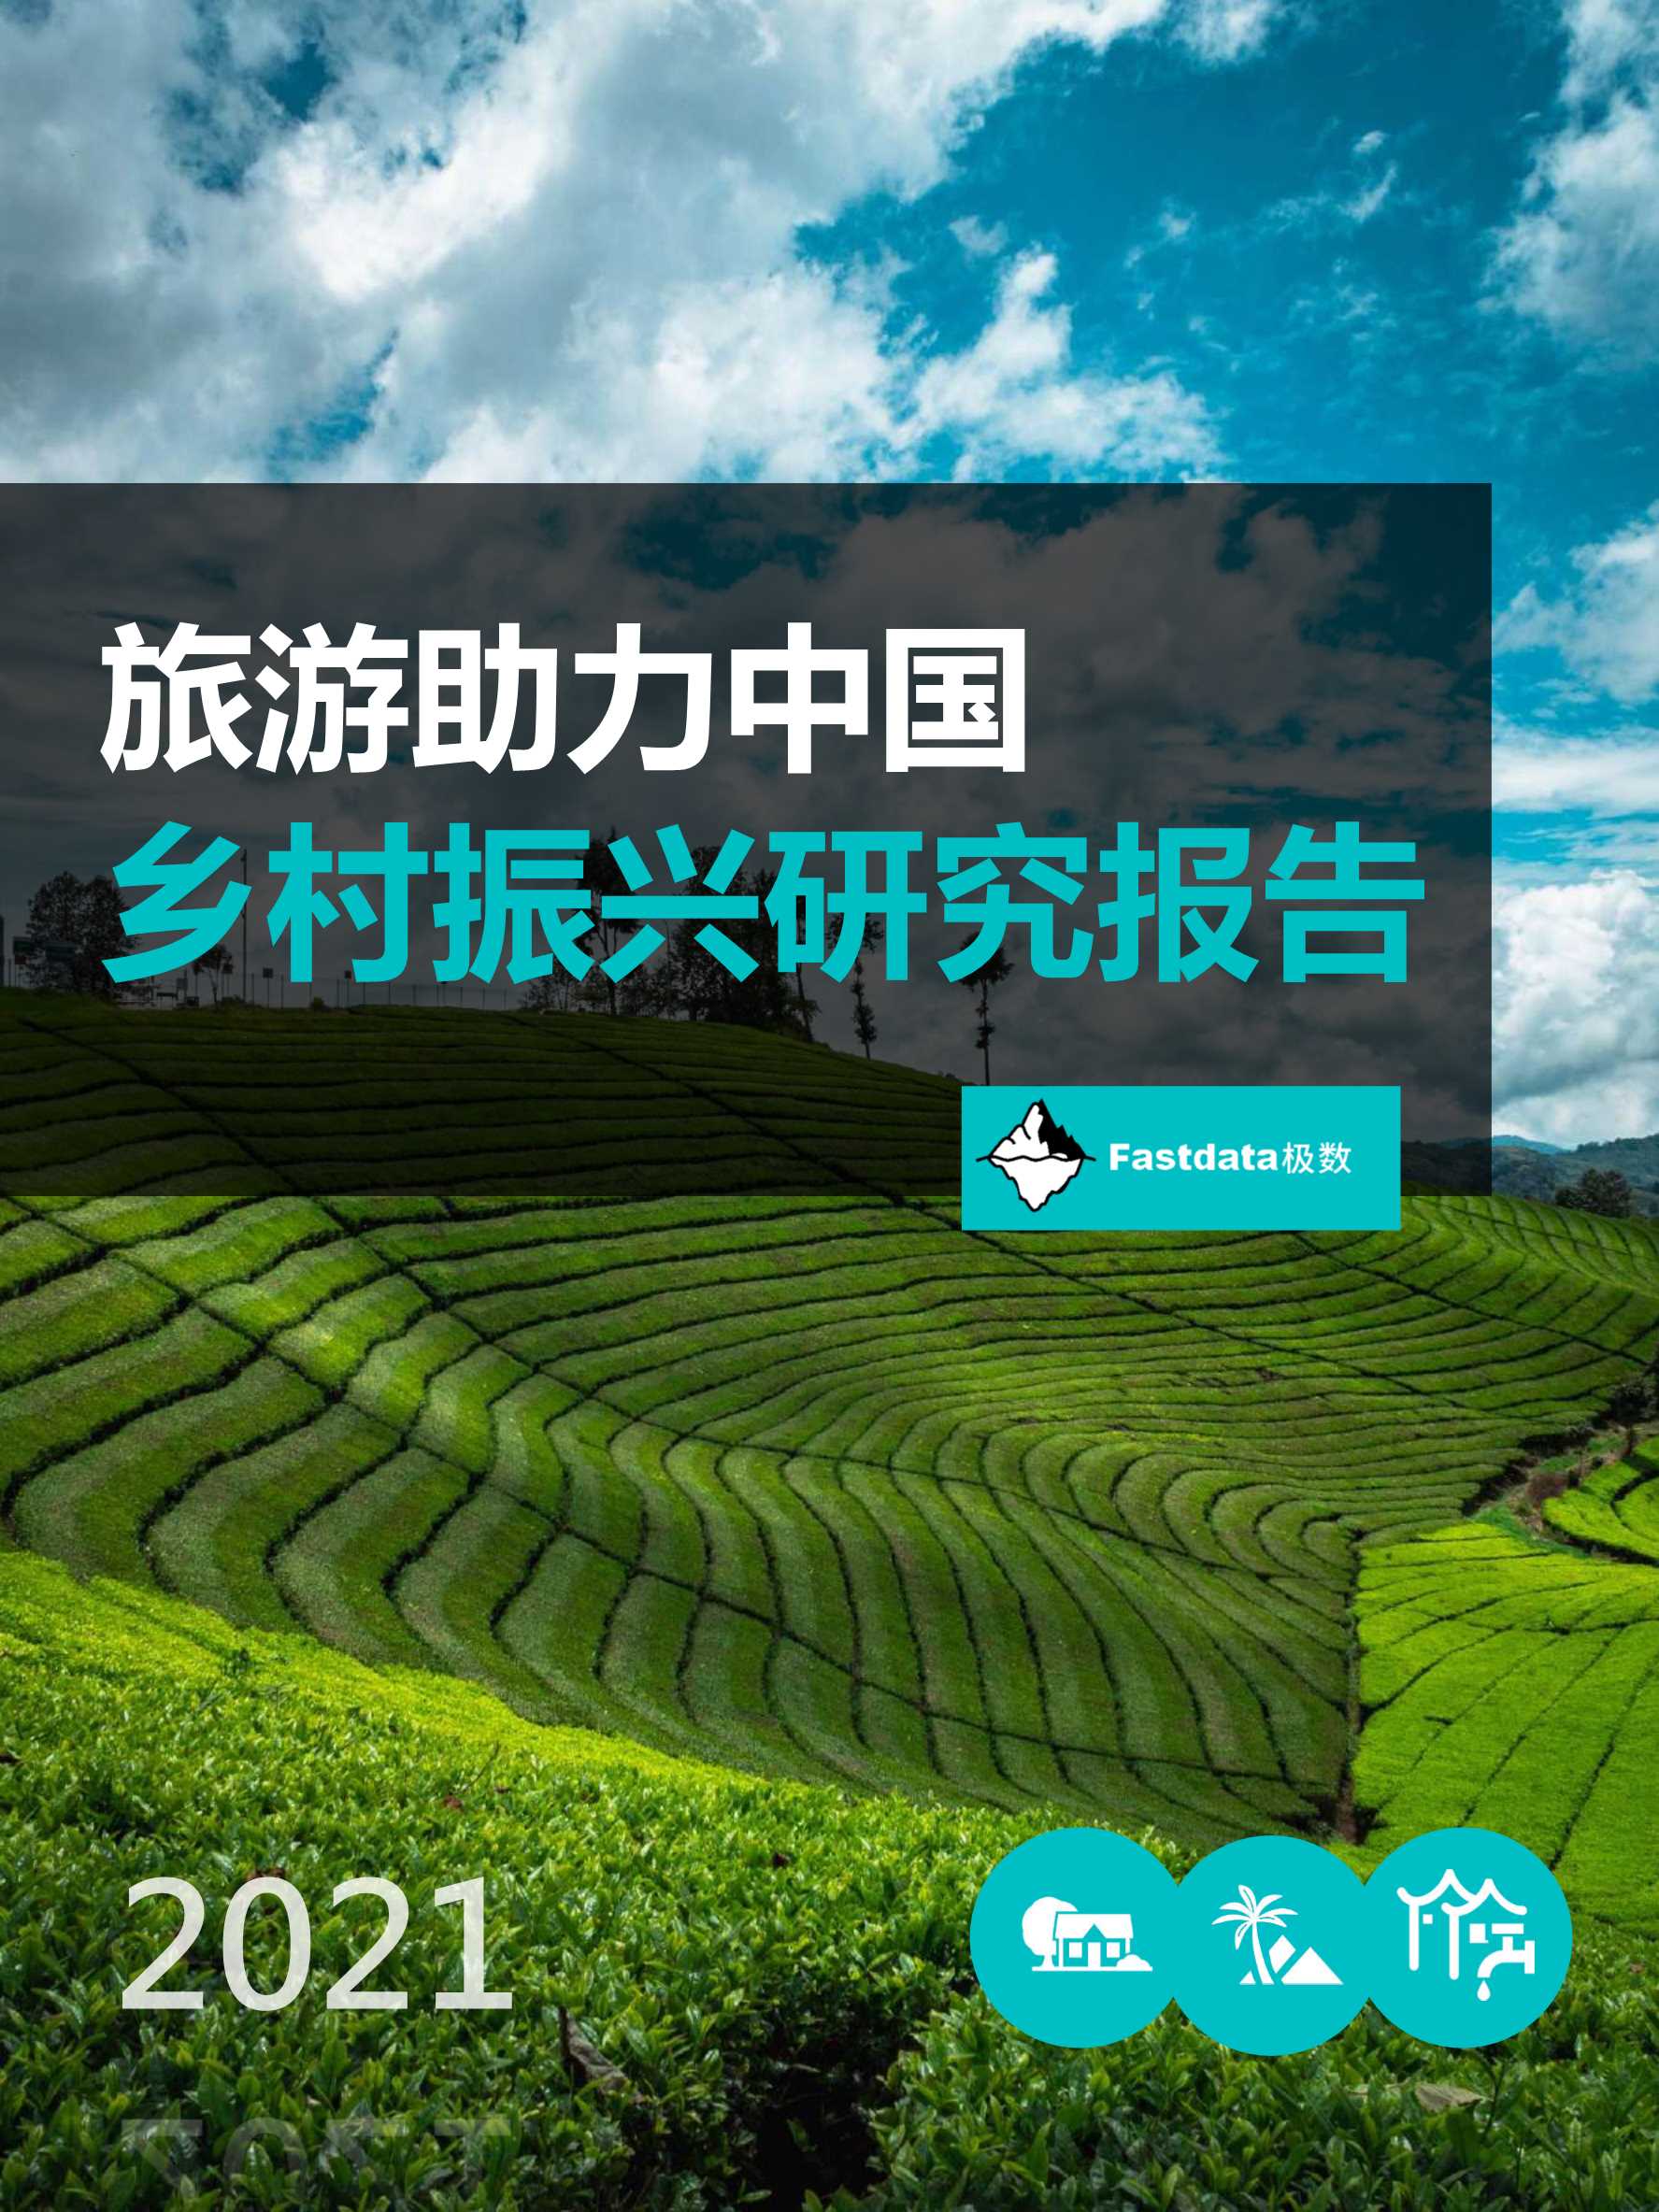 Fastdata极数-2021年旅游助力中国乡村振兴研究报告-2022.01-45页